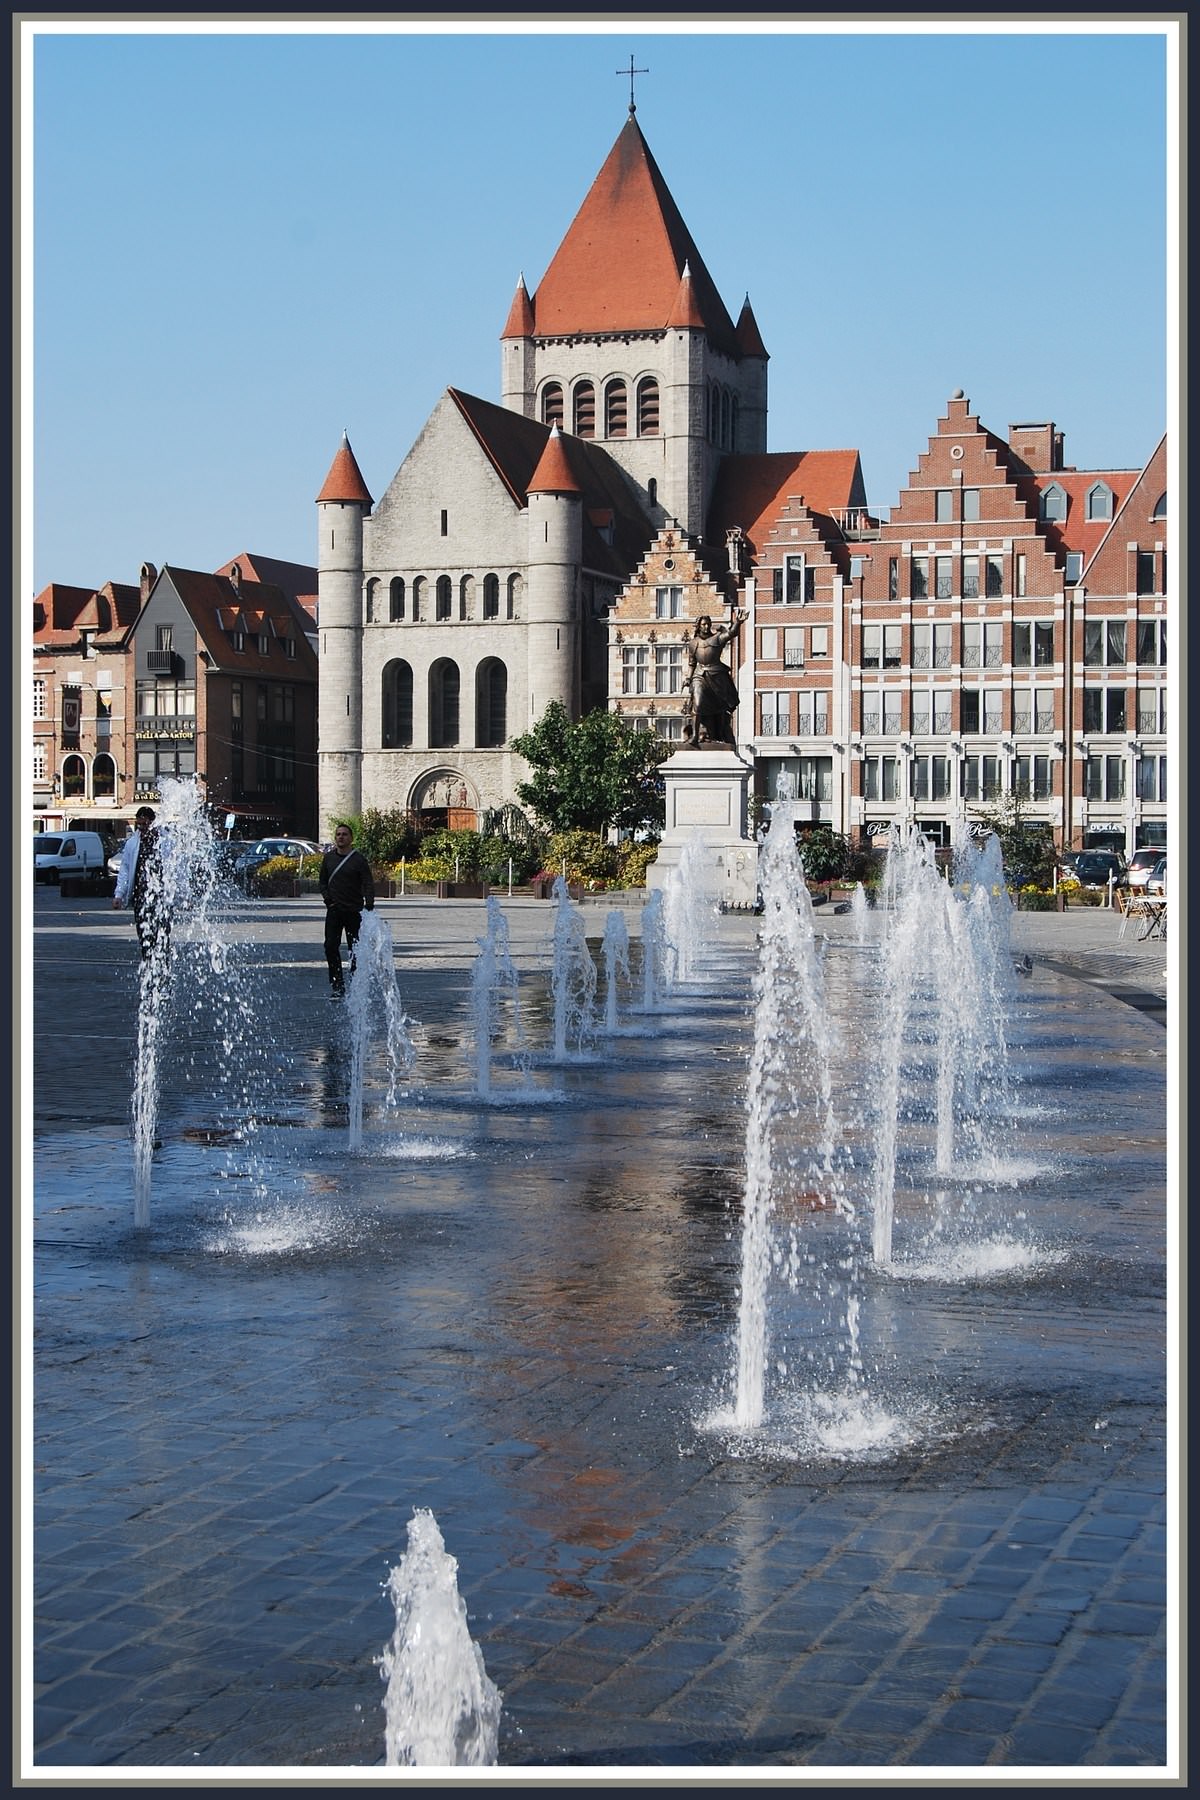 Belgique Tournai (Belgique) - Les jets d'eau sur la Gd-Plac